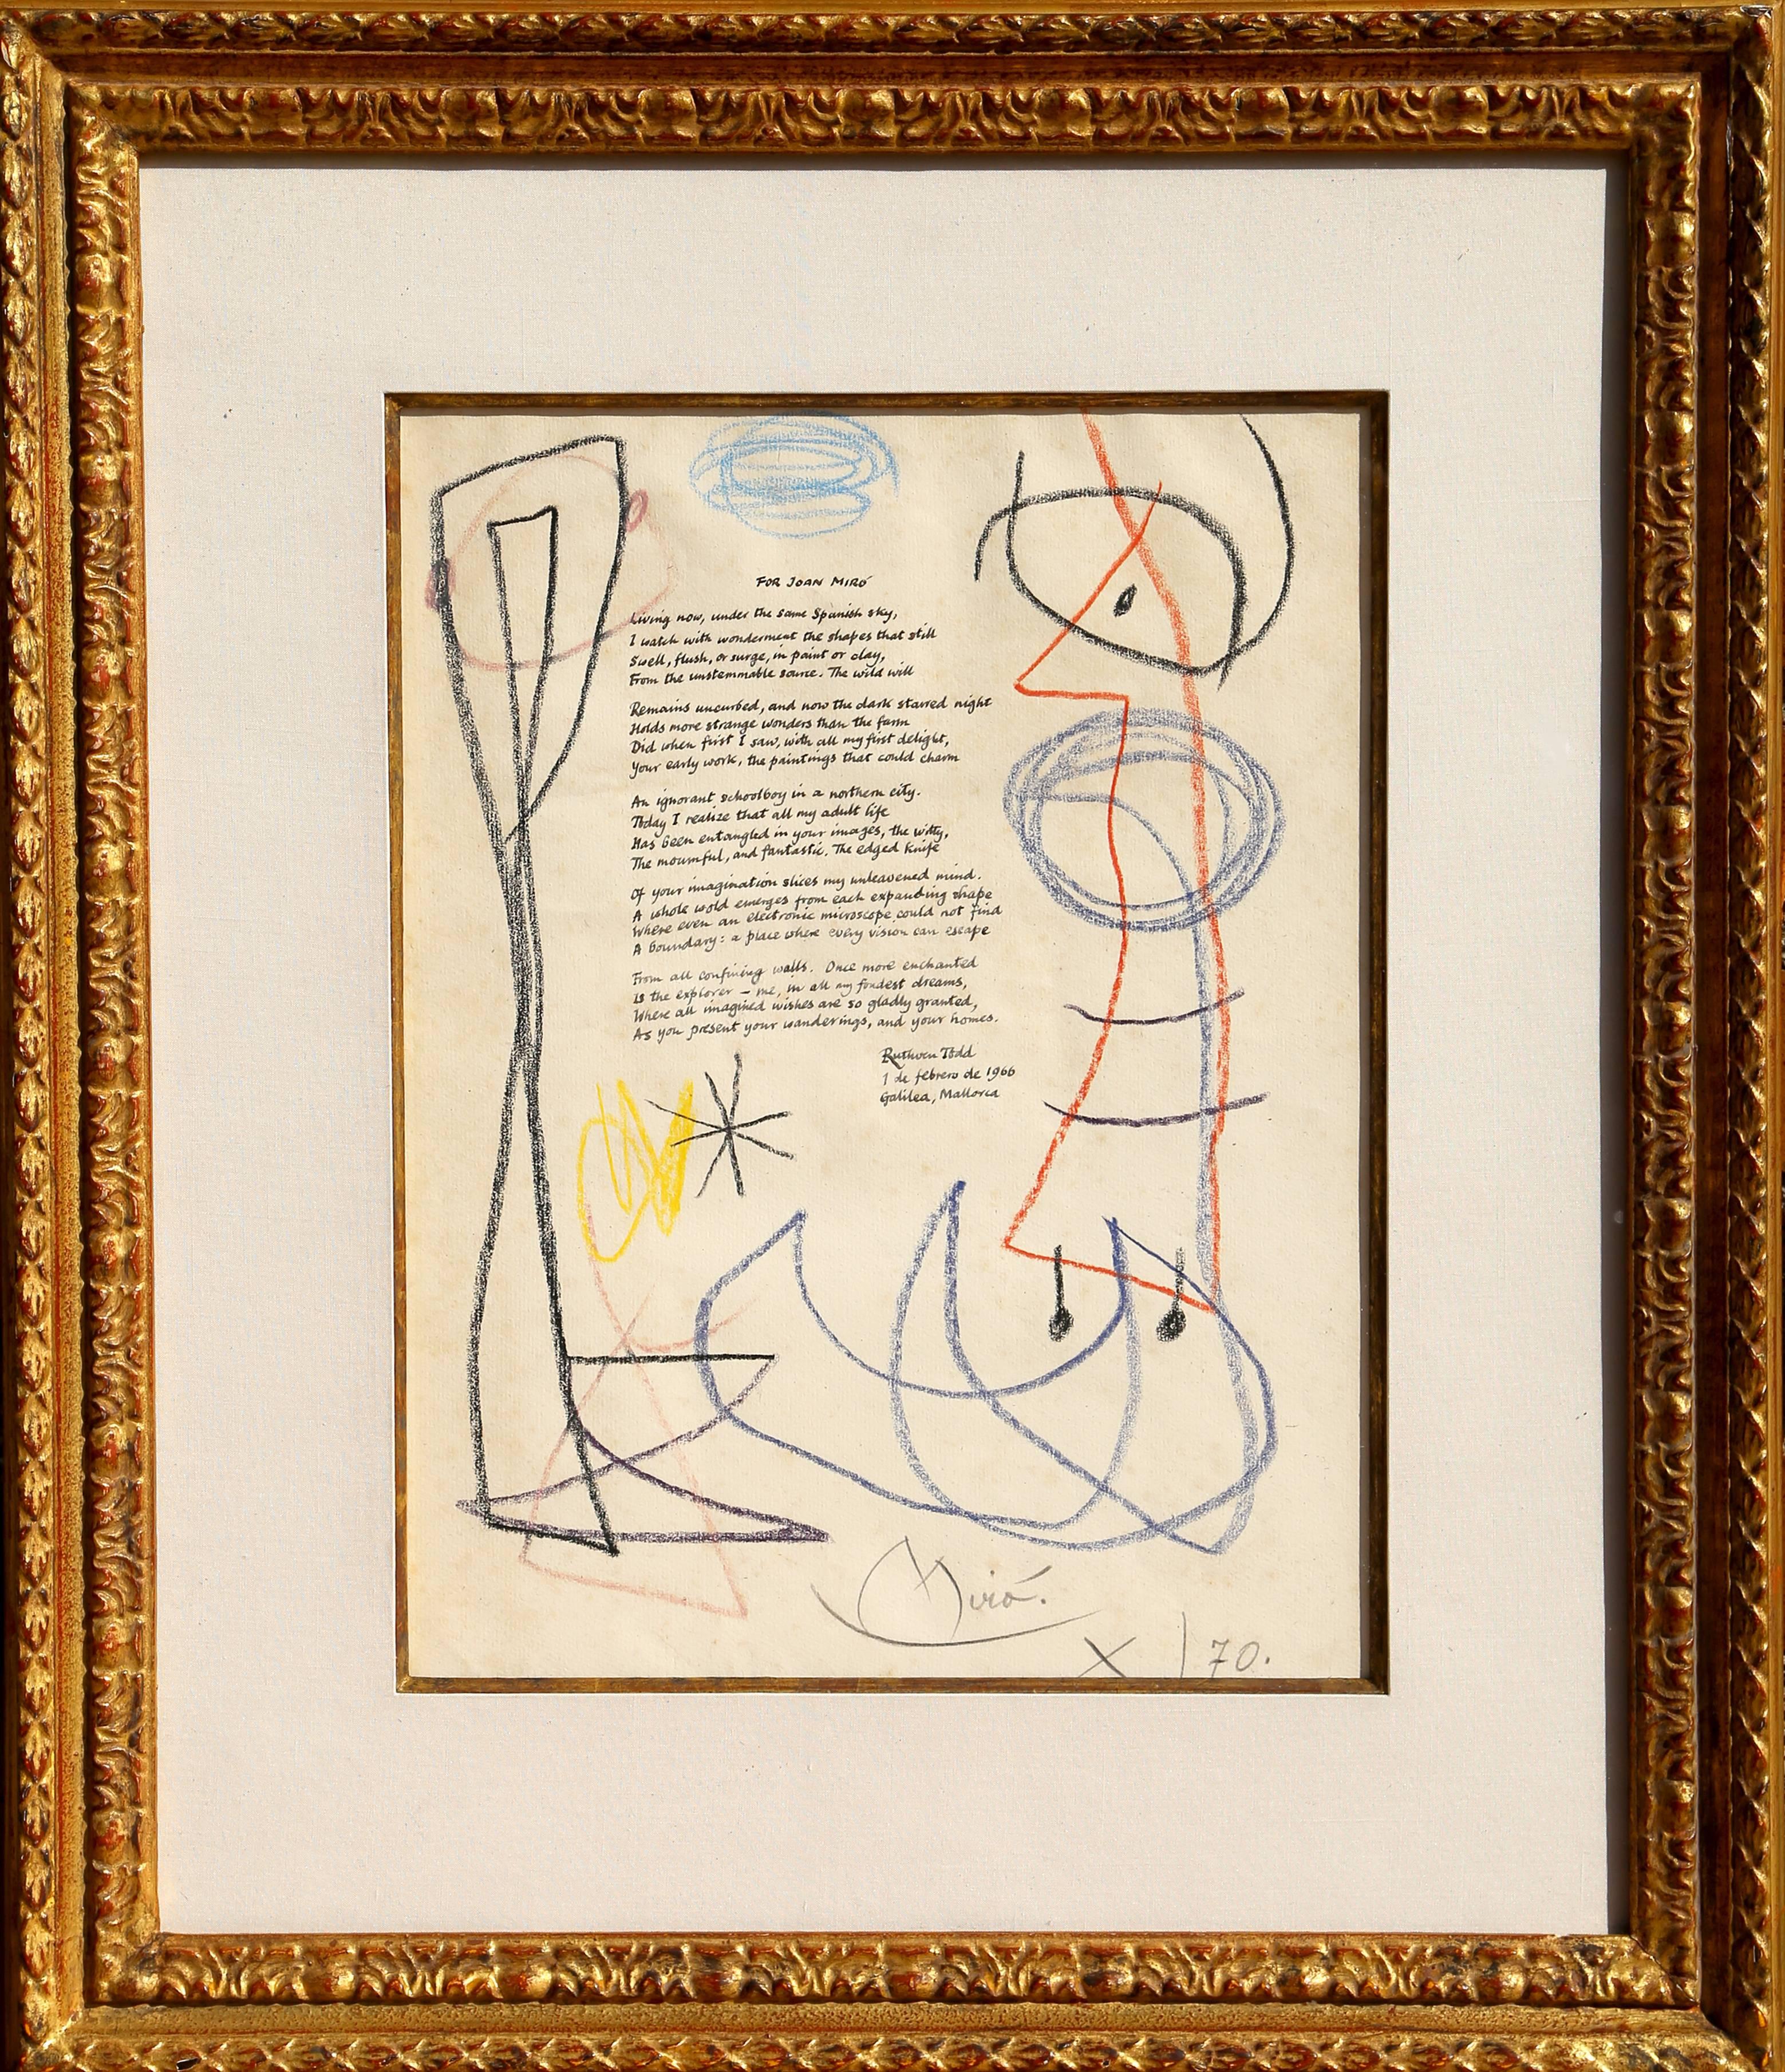 Joan Miró Abstract Drawing - Ruthven Todd Poem